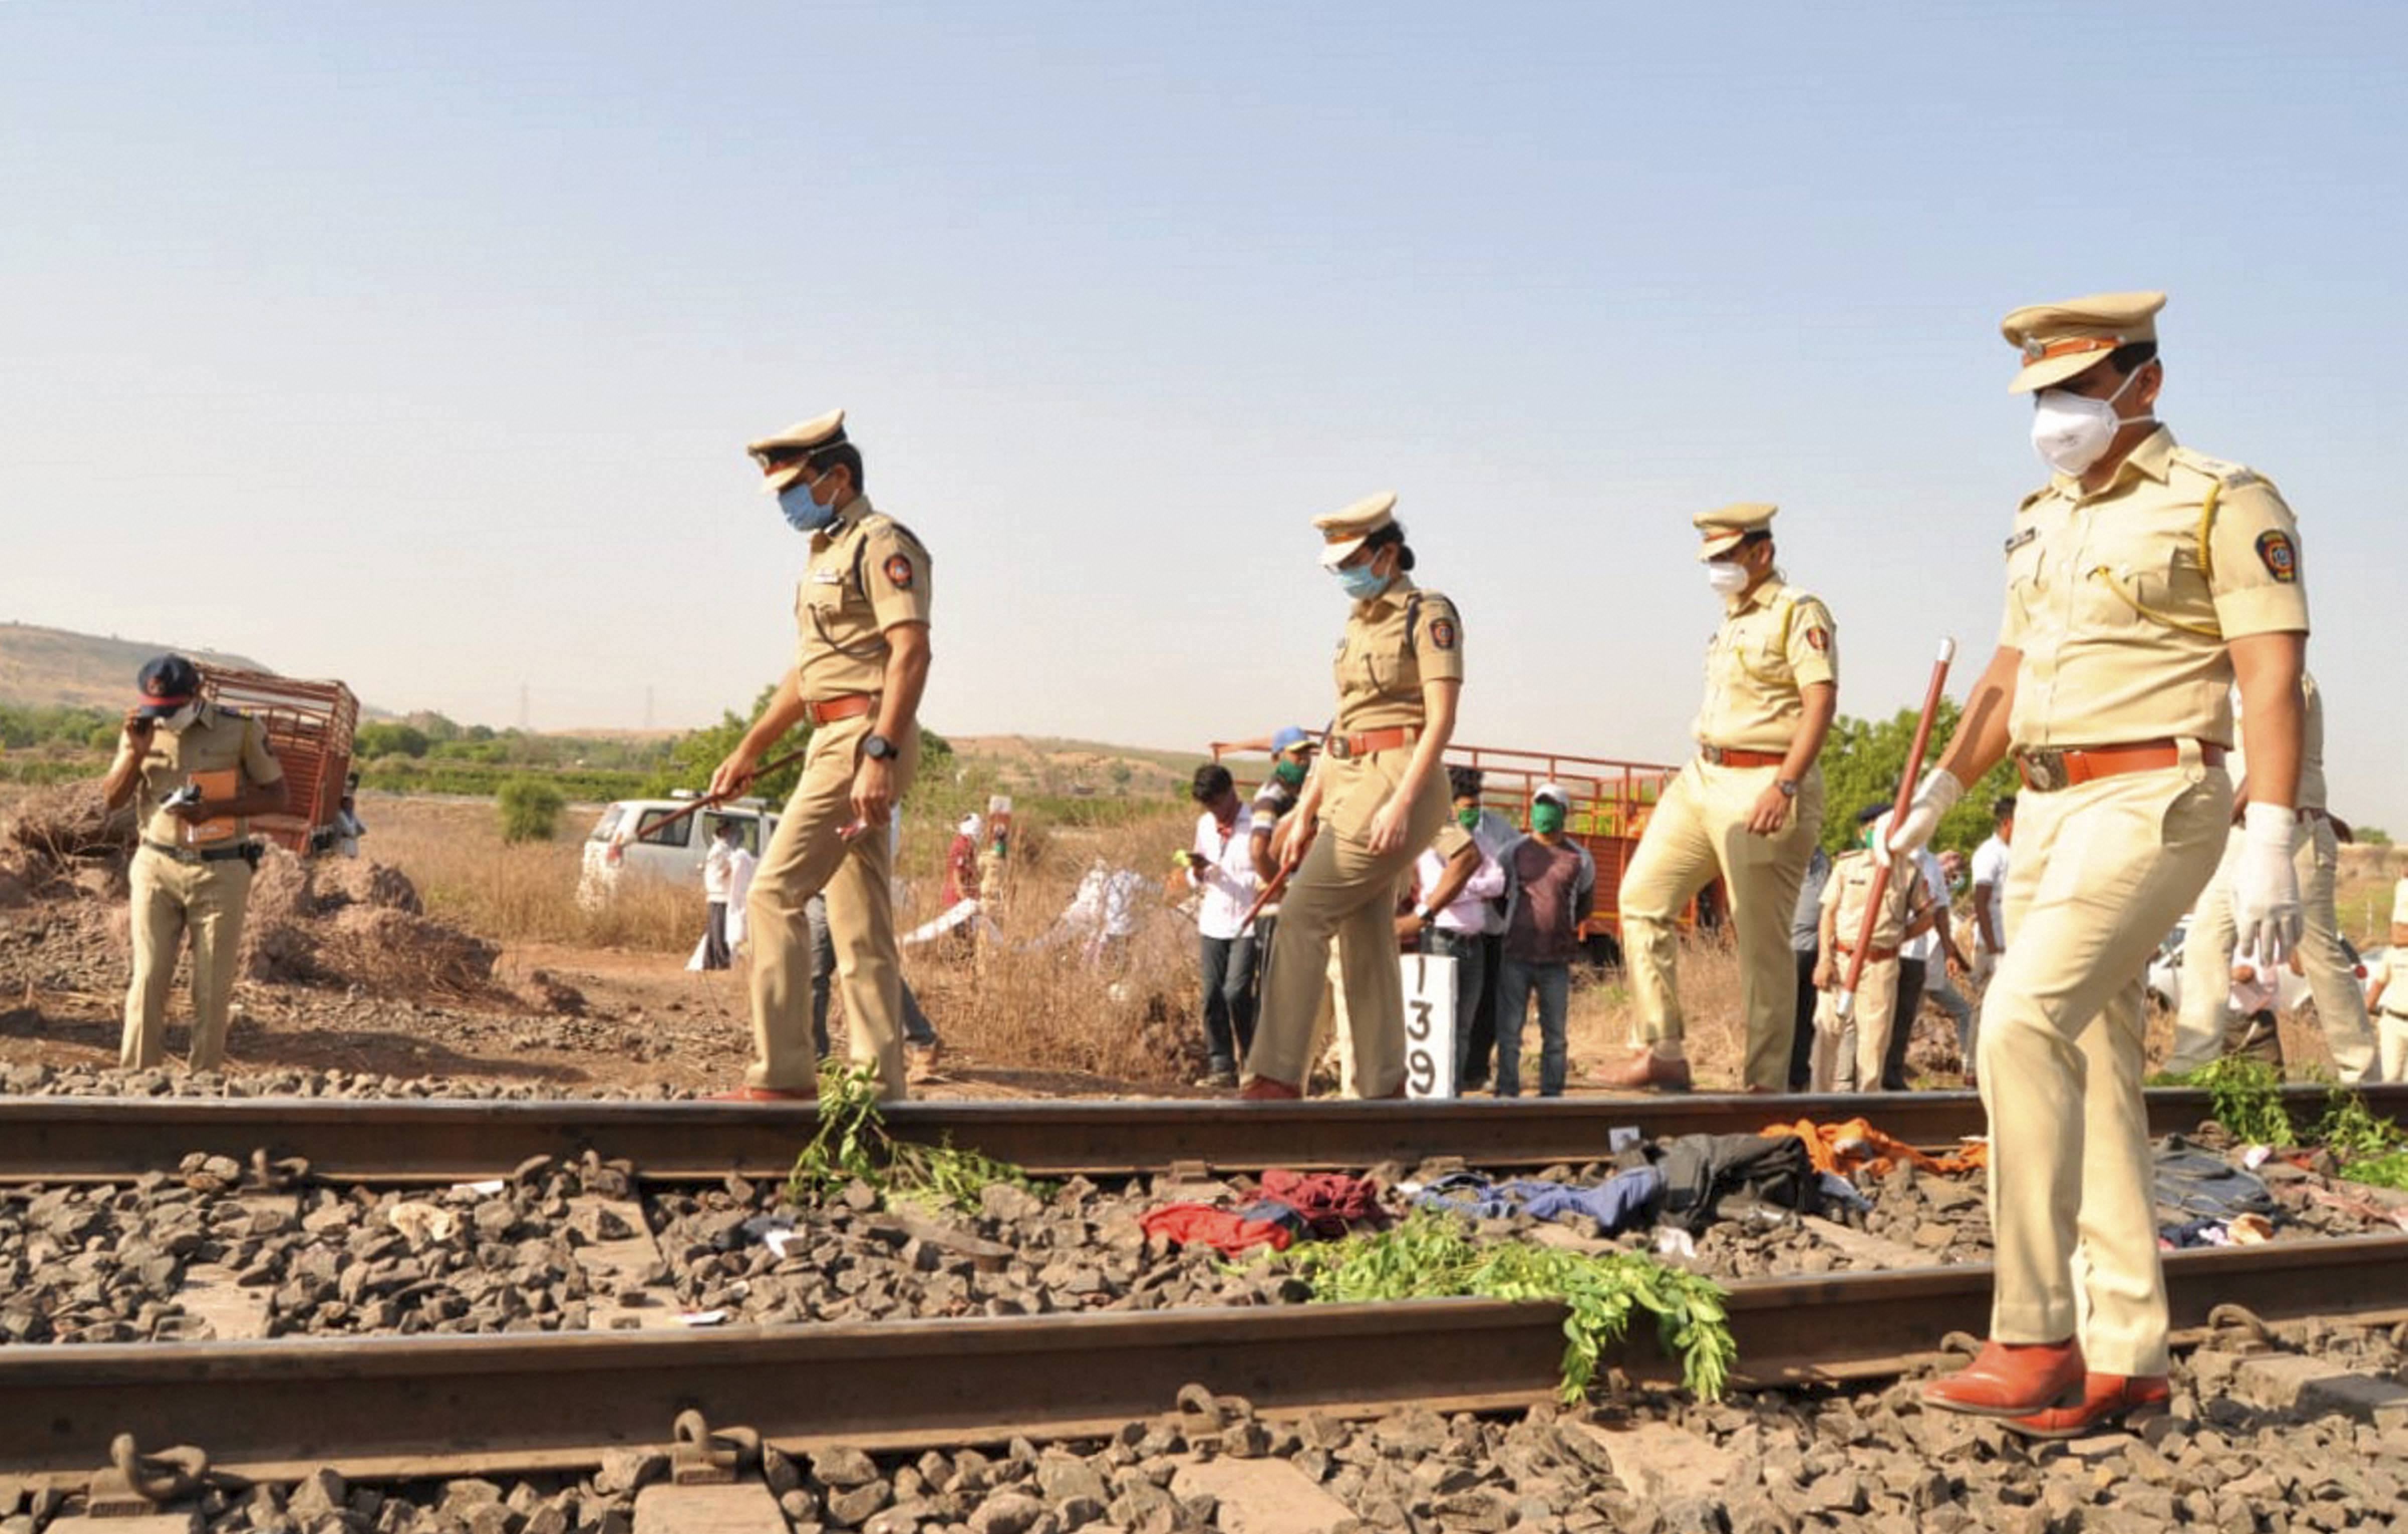 औरंगाबाद जिले में रेलवे ट्रैक पर हुई मजदूरों की मौत के बाद घटनास्थल की जांच करती पुलिस. (फोटो: पीटीआई)